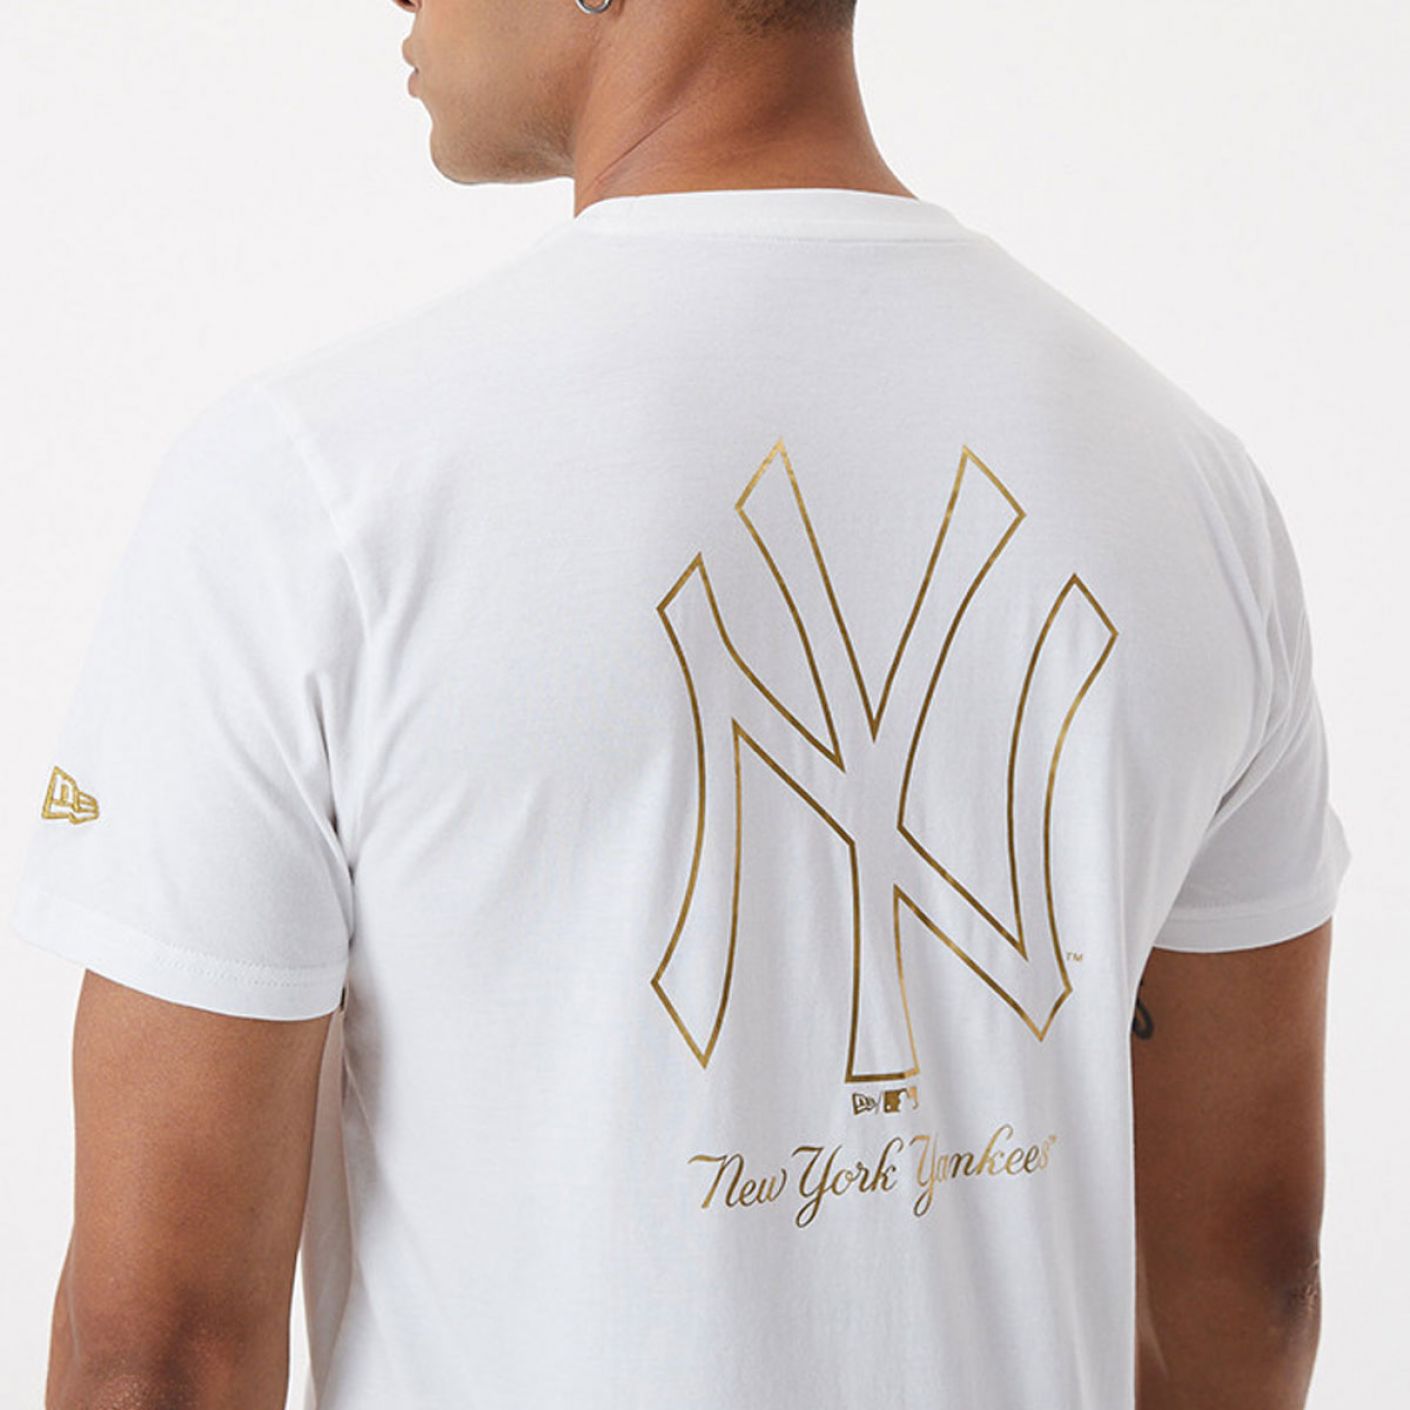 New era T-shirt Metallic New York Yankees White